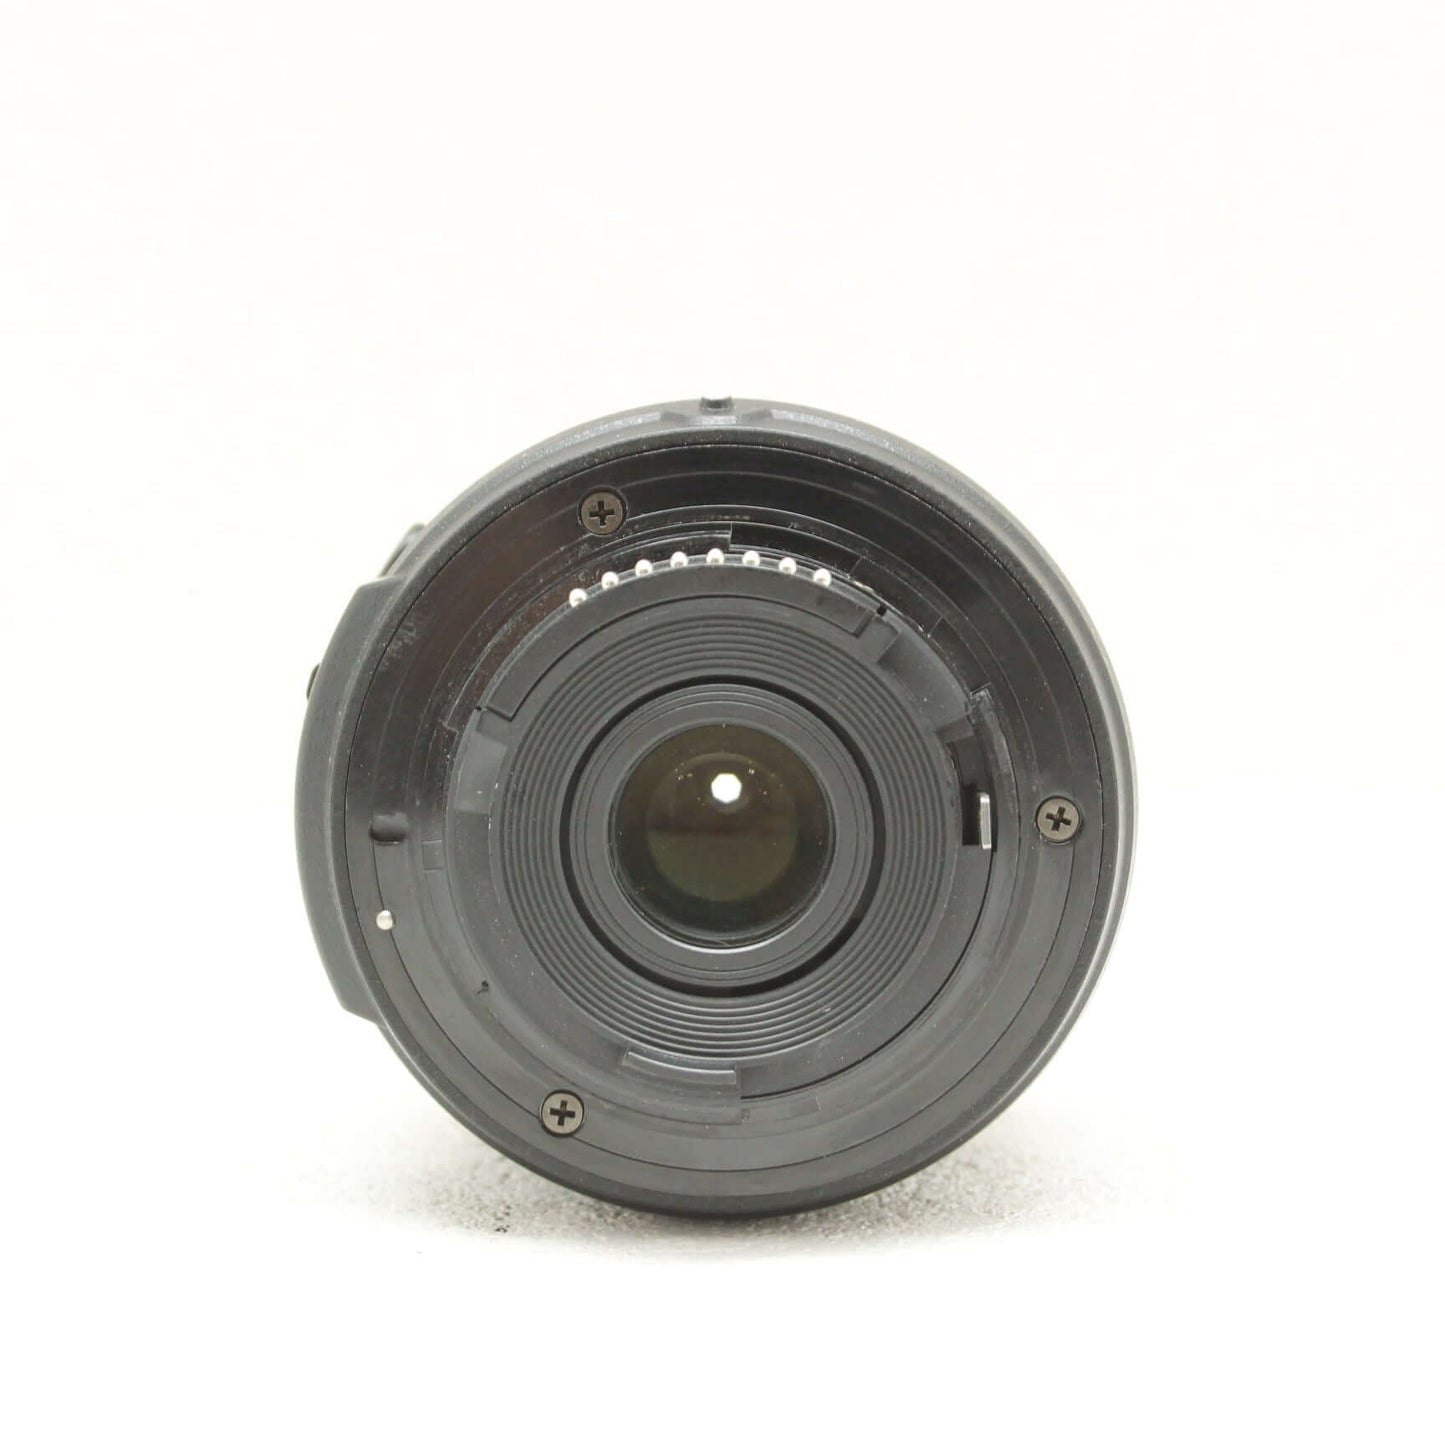 中古品 Nikon D3300 レンズキット